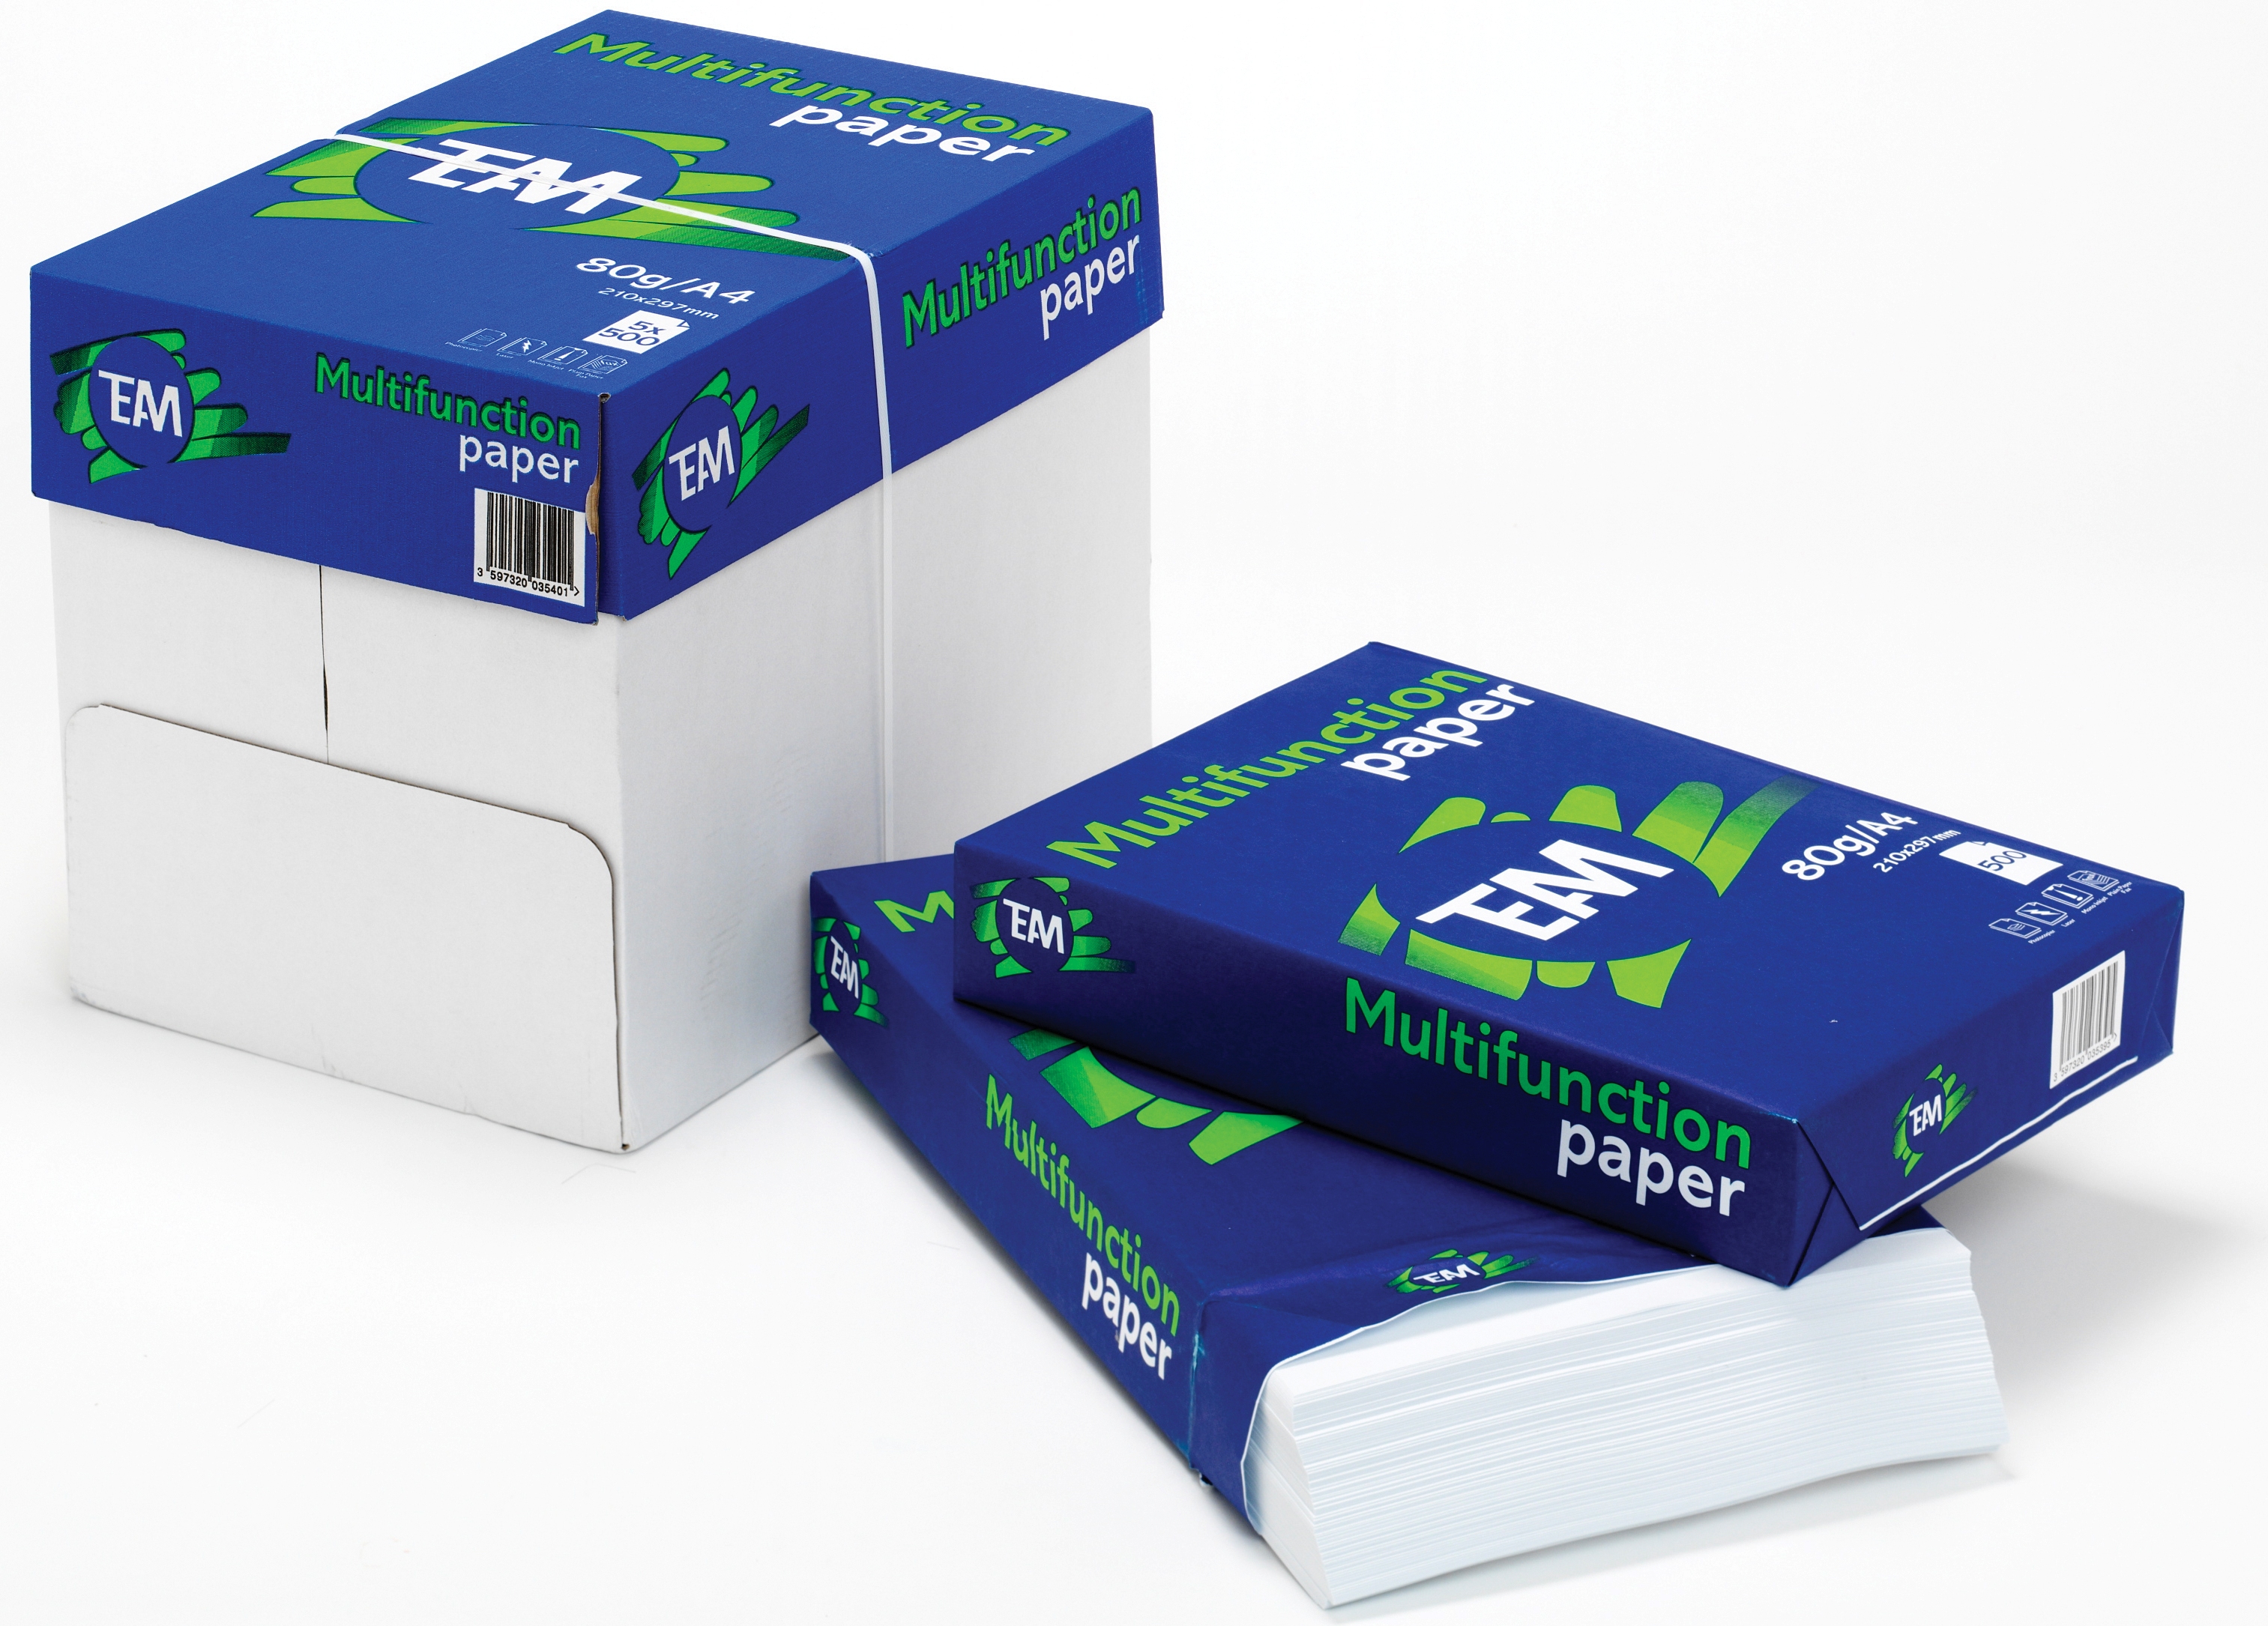 Kopierpapier TEAM Multifunction paper 363948, DIN A4, 80 g/qm, weiß, 1 Palette mit 100.000 Blatt